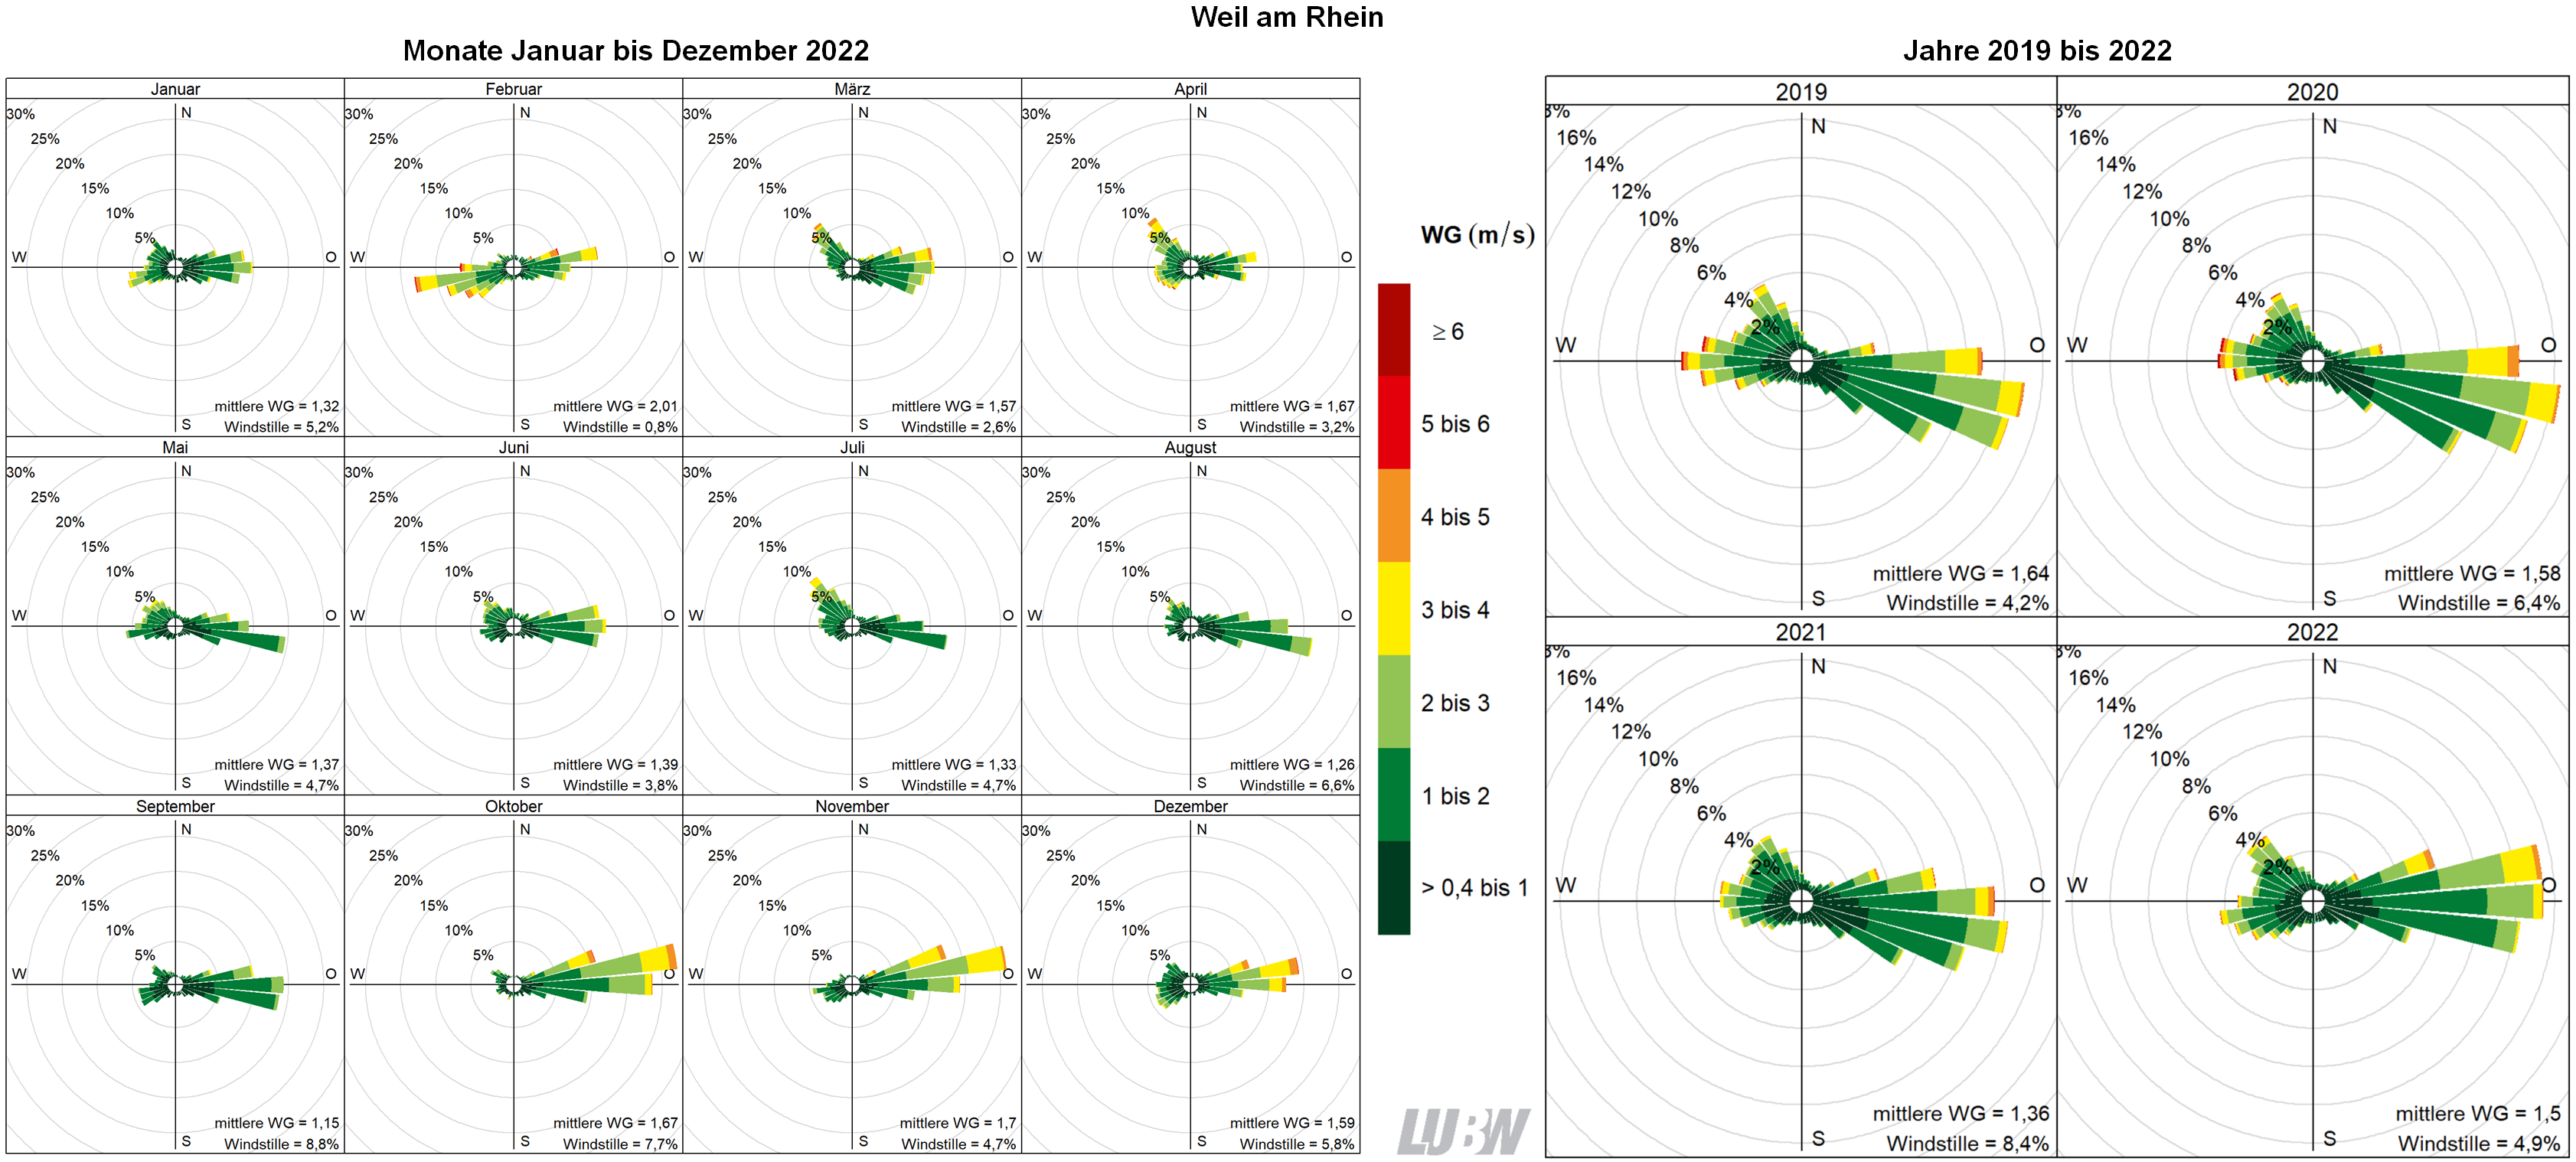  Mitttlere Windverteilung als Windrosen für die Monate Januar bis Dezember 2022 (linke Abbildung) sowie für die Jahre 2019 bis 2022 (rechte Abbildung) für den Standort Weil am Rhein. Weitere Informationen im umliegenden Text. 